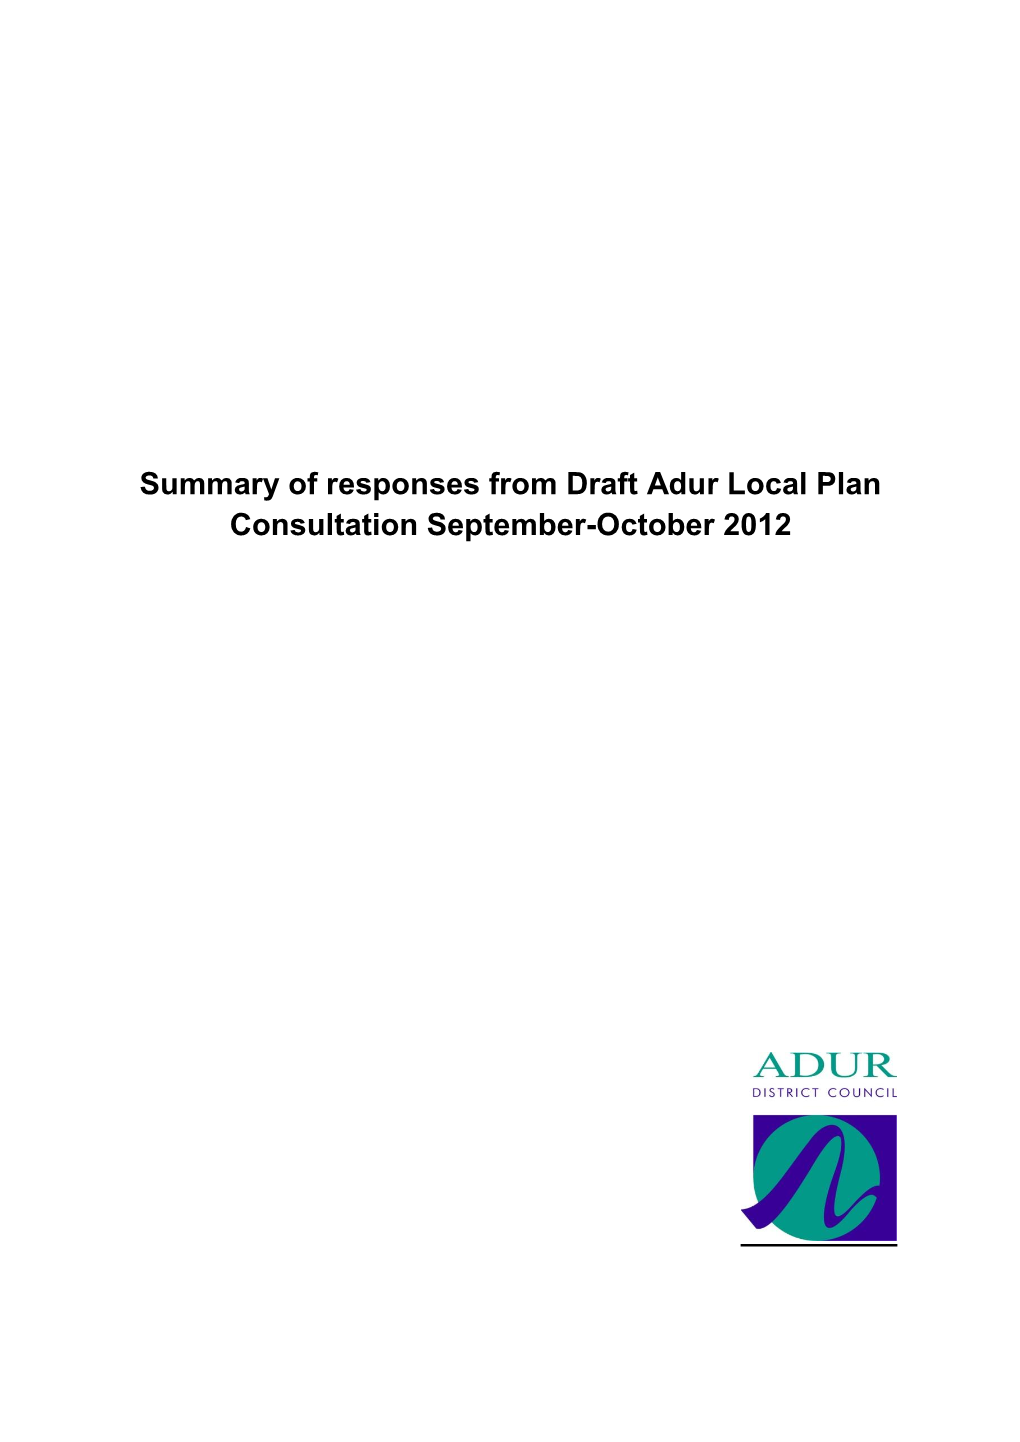 Summary of Responses from Draft Adur Local Plan Consultation September-October 2012